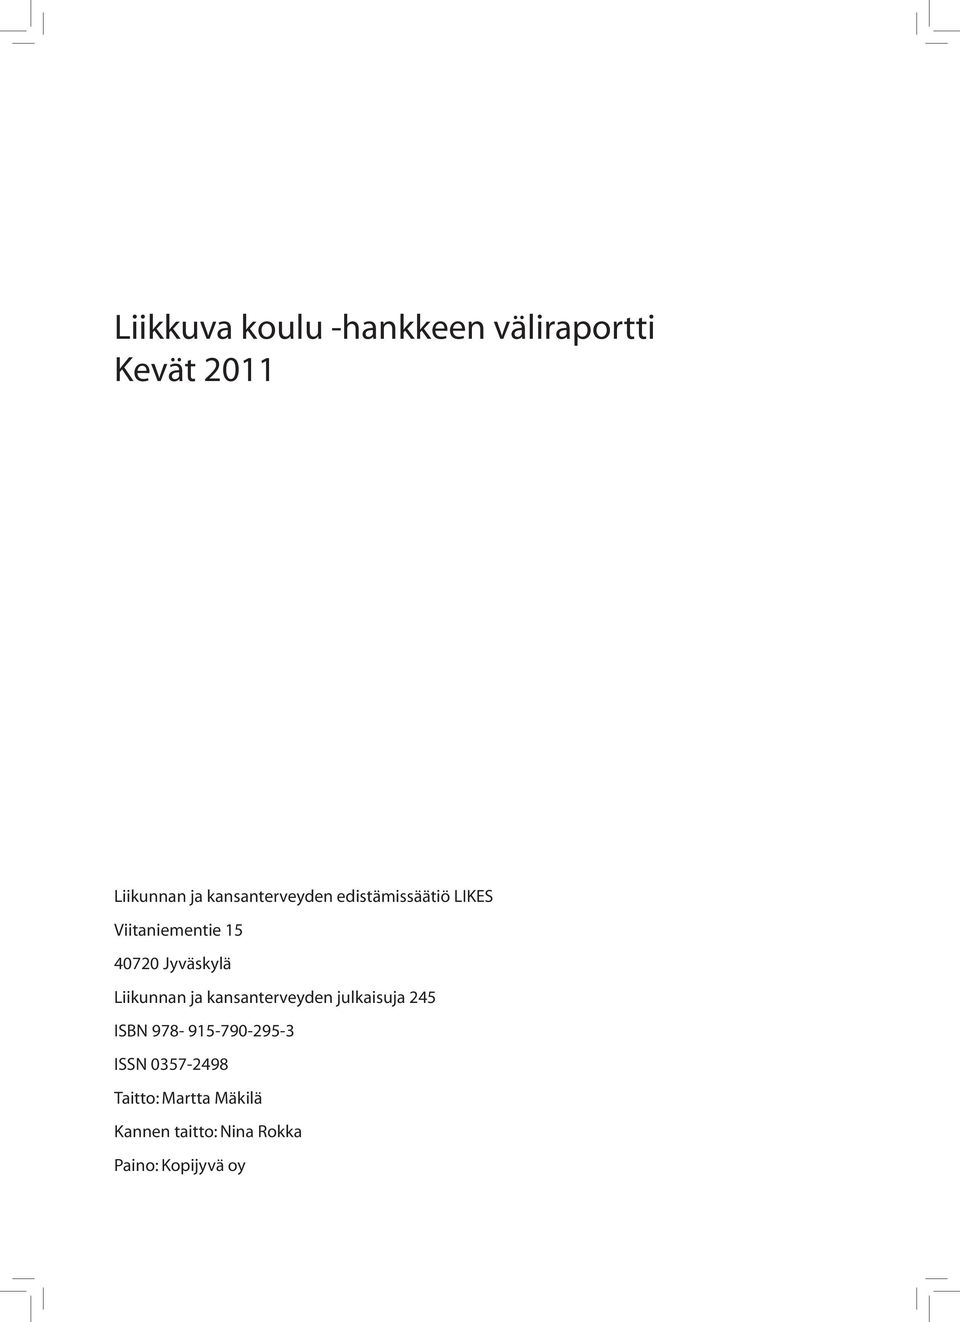 Jyväskylä Liikunnan ja kansanterveyden julkaisuja 245 ISBN